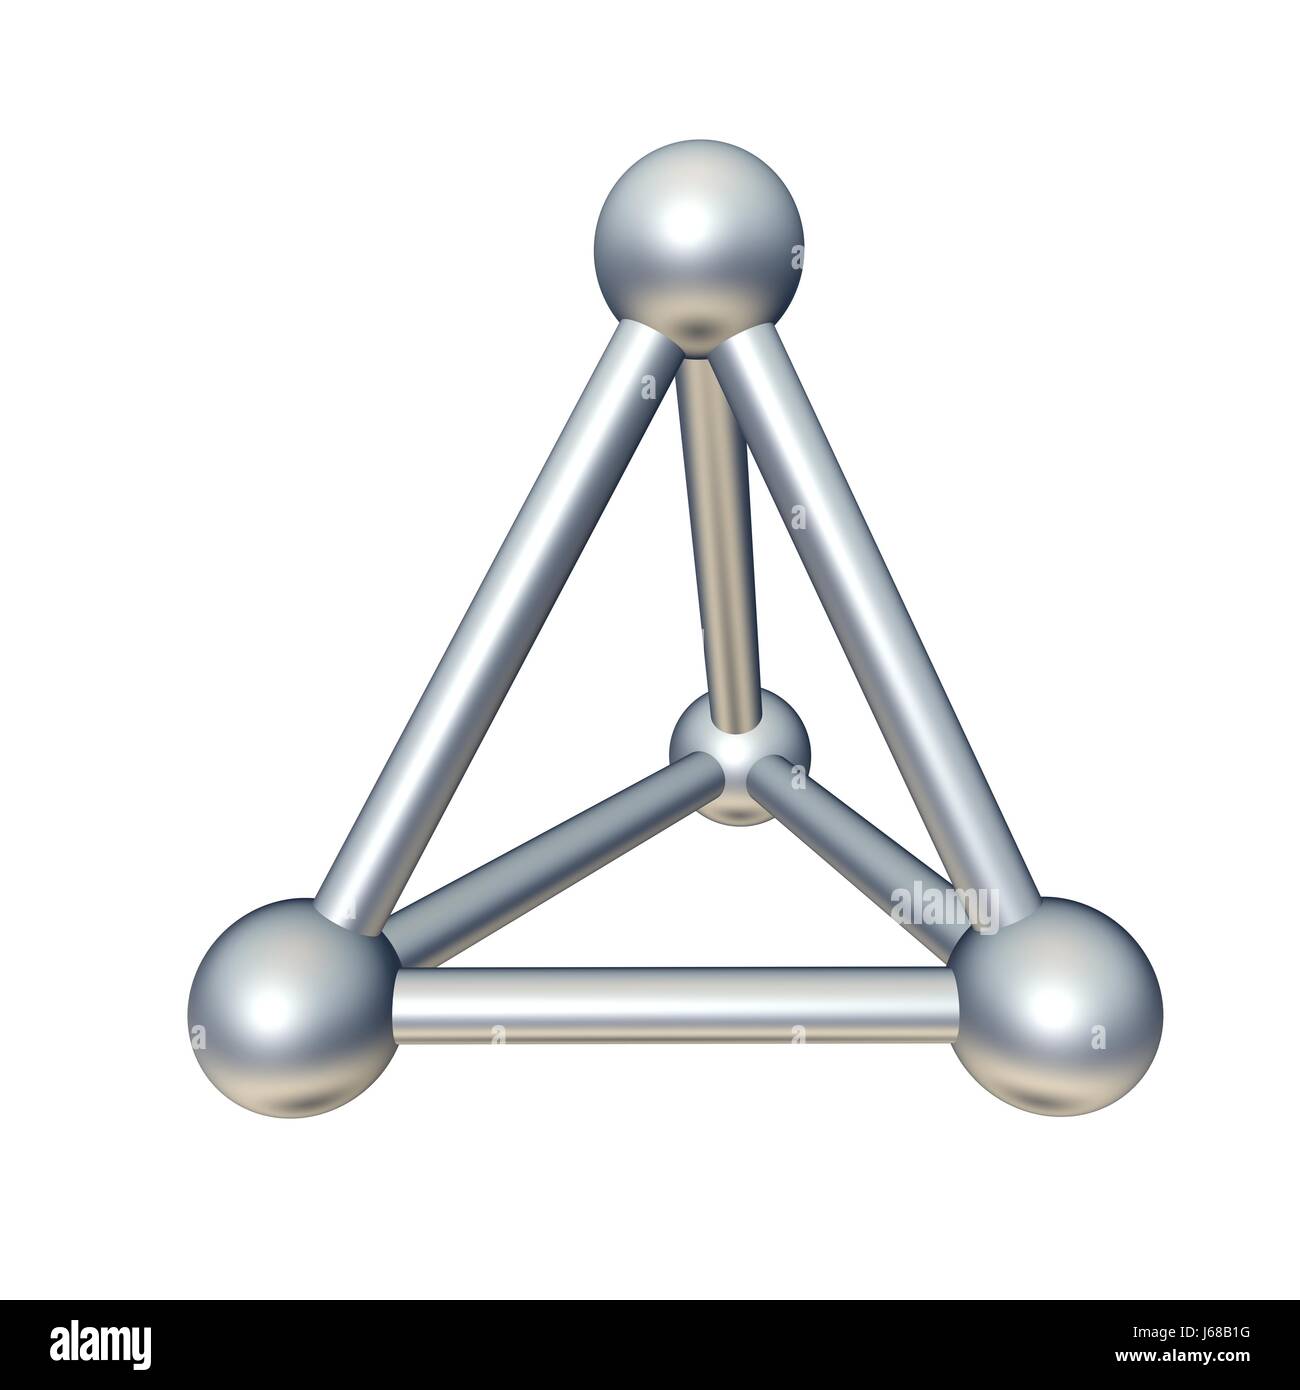 Atome pyramide cubes spatiale modèle solide isolé de l'objet connecté affinité Banque D'Images